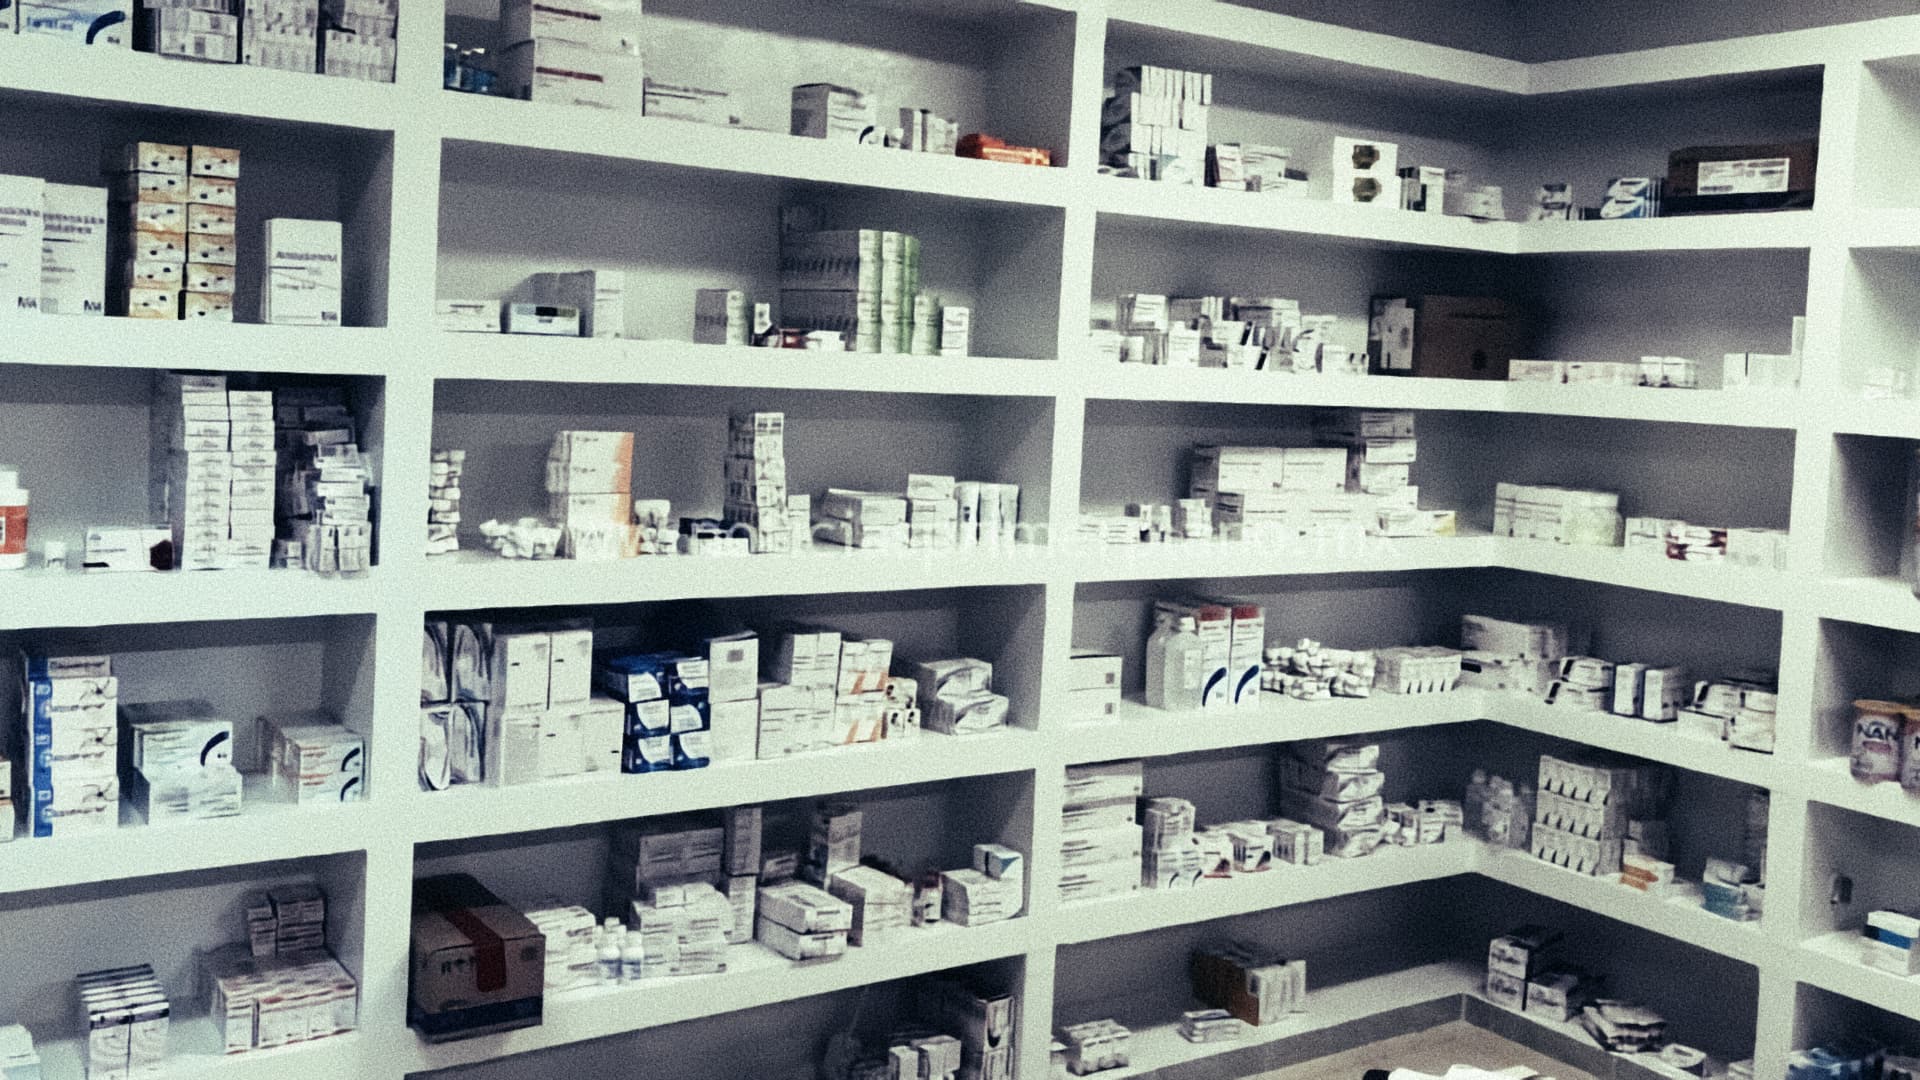 Persiste descoordinación en compras de medicinas: CANIFARMA